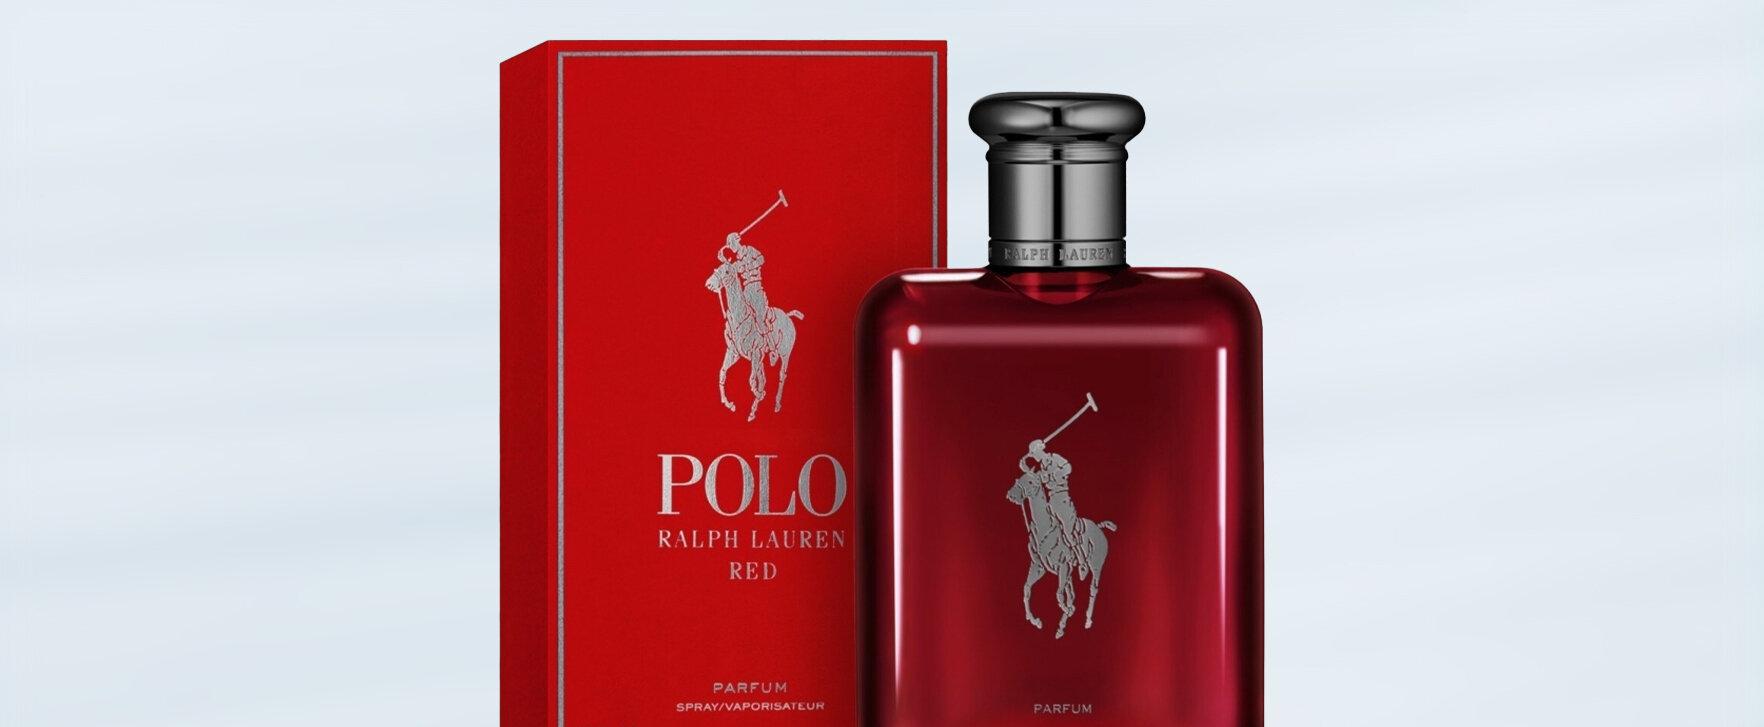 Sportlicher Duft für Abenteuerlustige: Ralph Lauren bringt „Polo Red Parfum“ auf den Markt